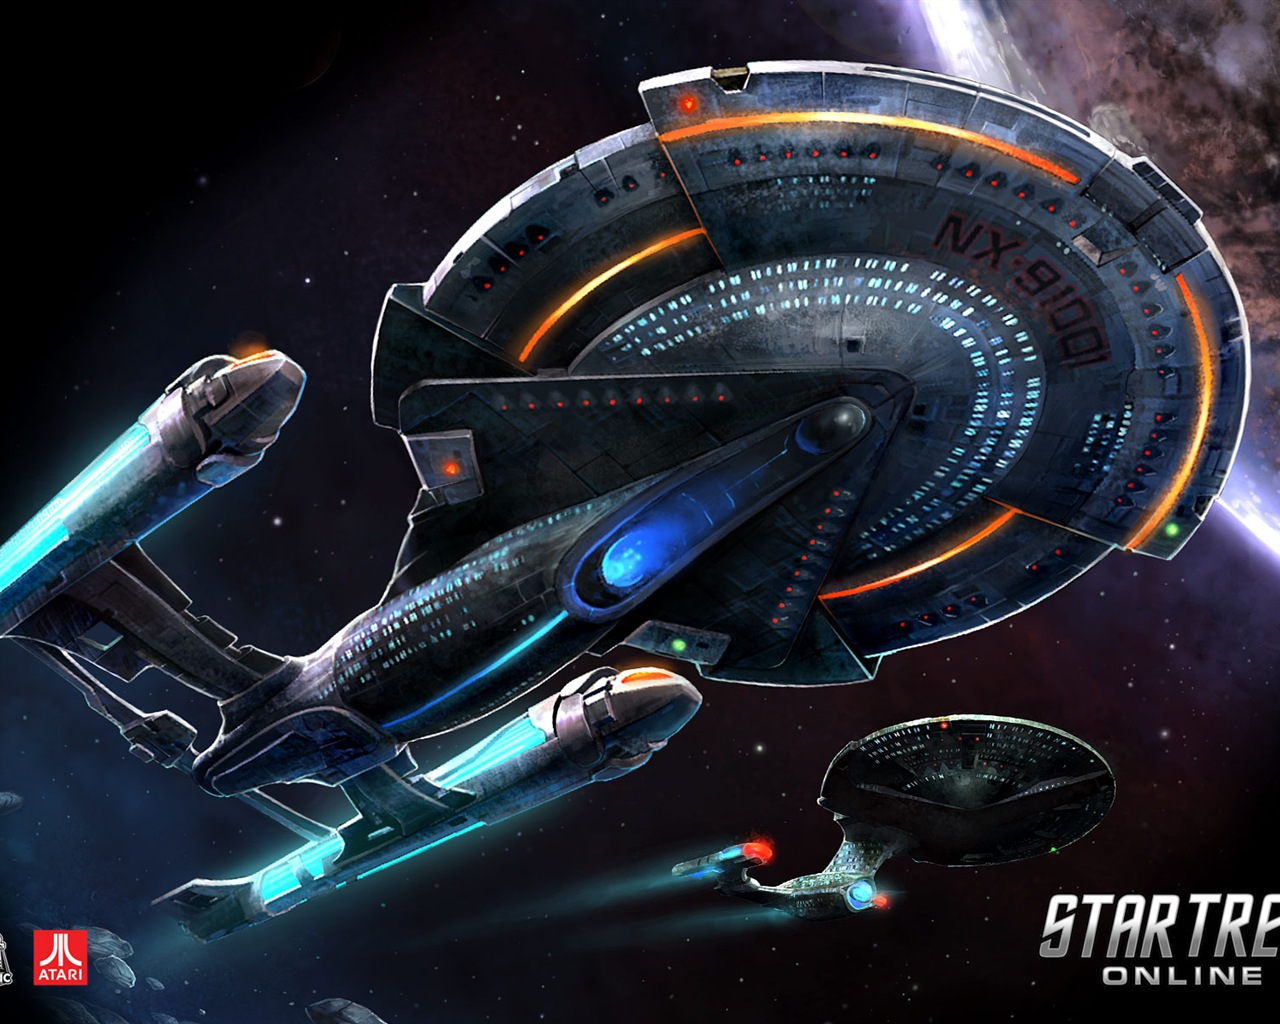 Star Trek Online 星际迷航在线 游戏高清壁纸13 - 1280x1024